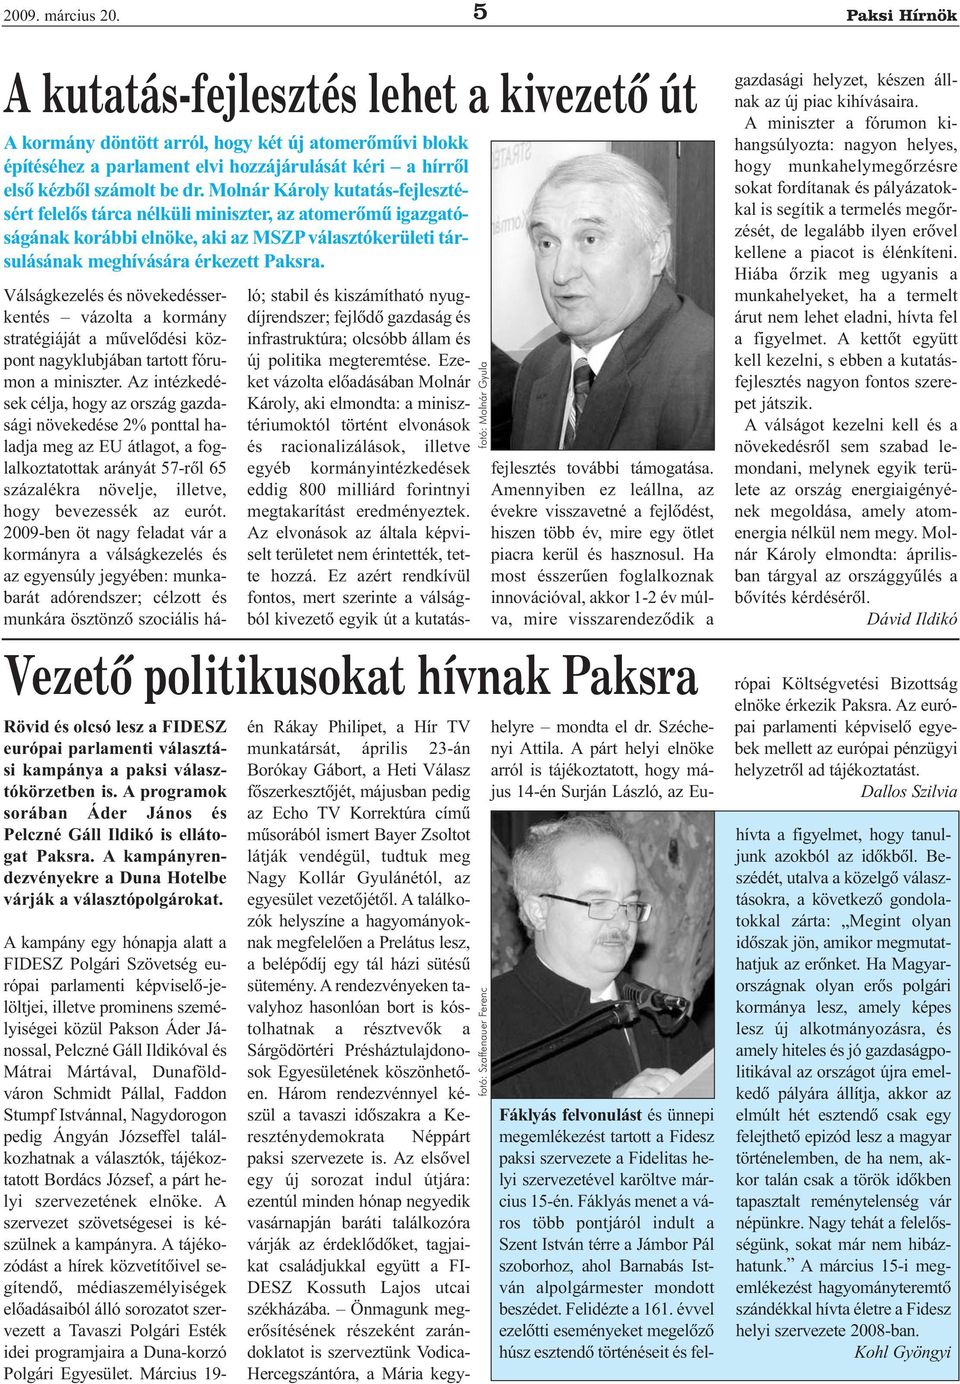 Molnár Károly kutatás-fejlesztésért felelõs tárca nélküli miniszter, az atomerõmû igazgatóságának korábbi elnöke, aki az MSZP választókerületi társulásának meghívására érkezett Paksra.